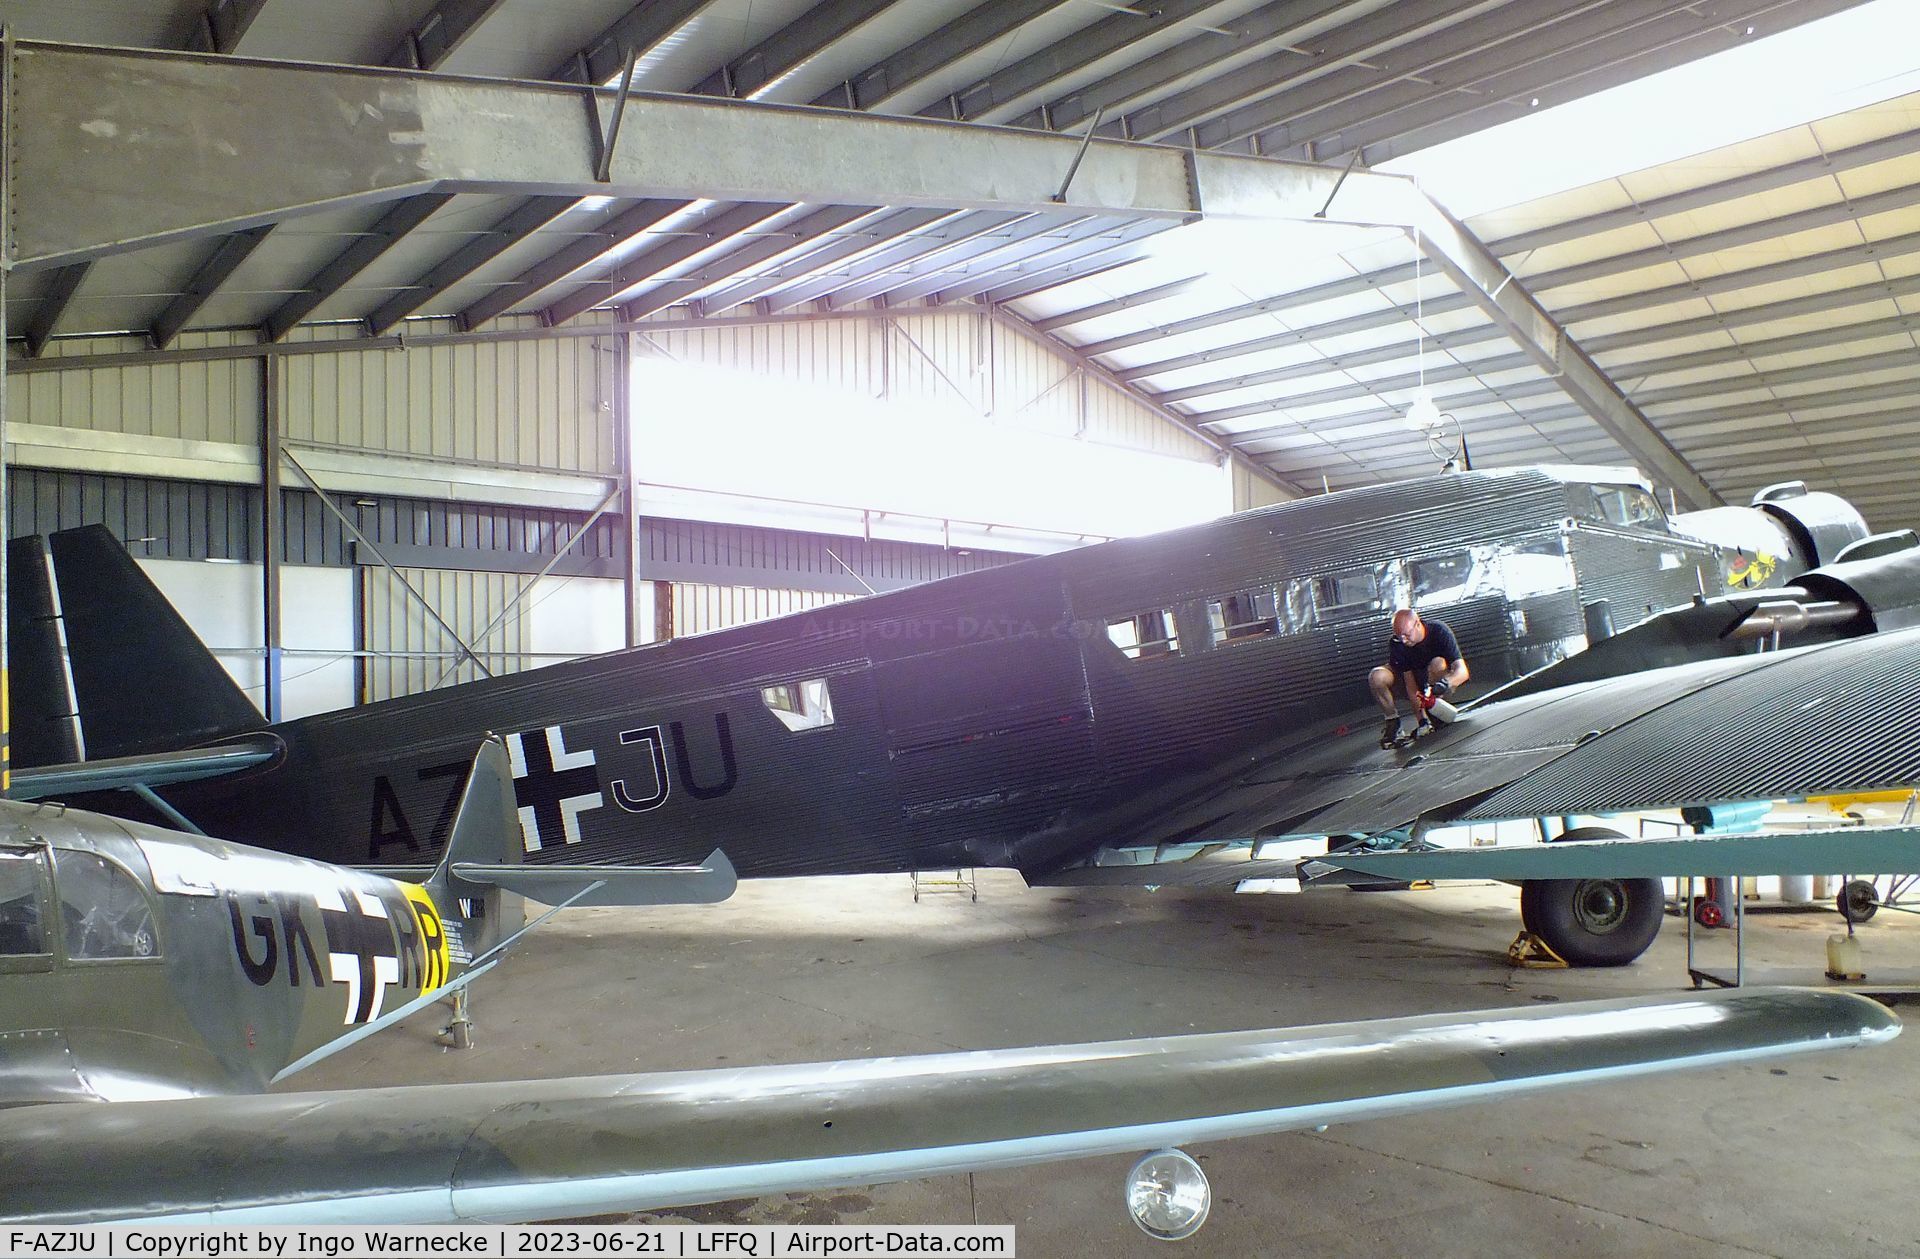 F-AZJU, 1952 Junkers (CASA) 352L (Ju-52) C/N 103, CASA 352L (Junkers Ju 52/3m) at the Musee Volant Salis/Aero Vintage Academy, Cerny